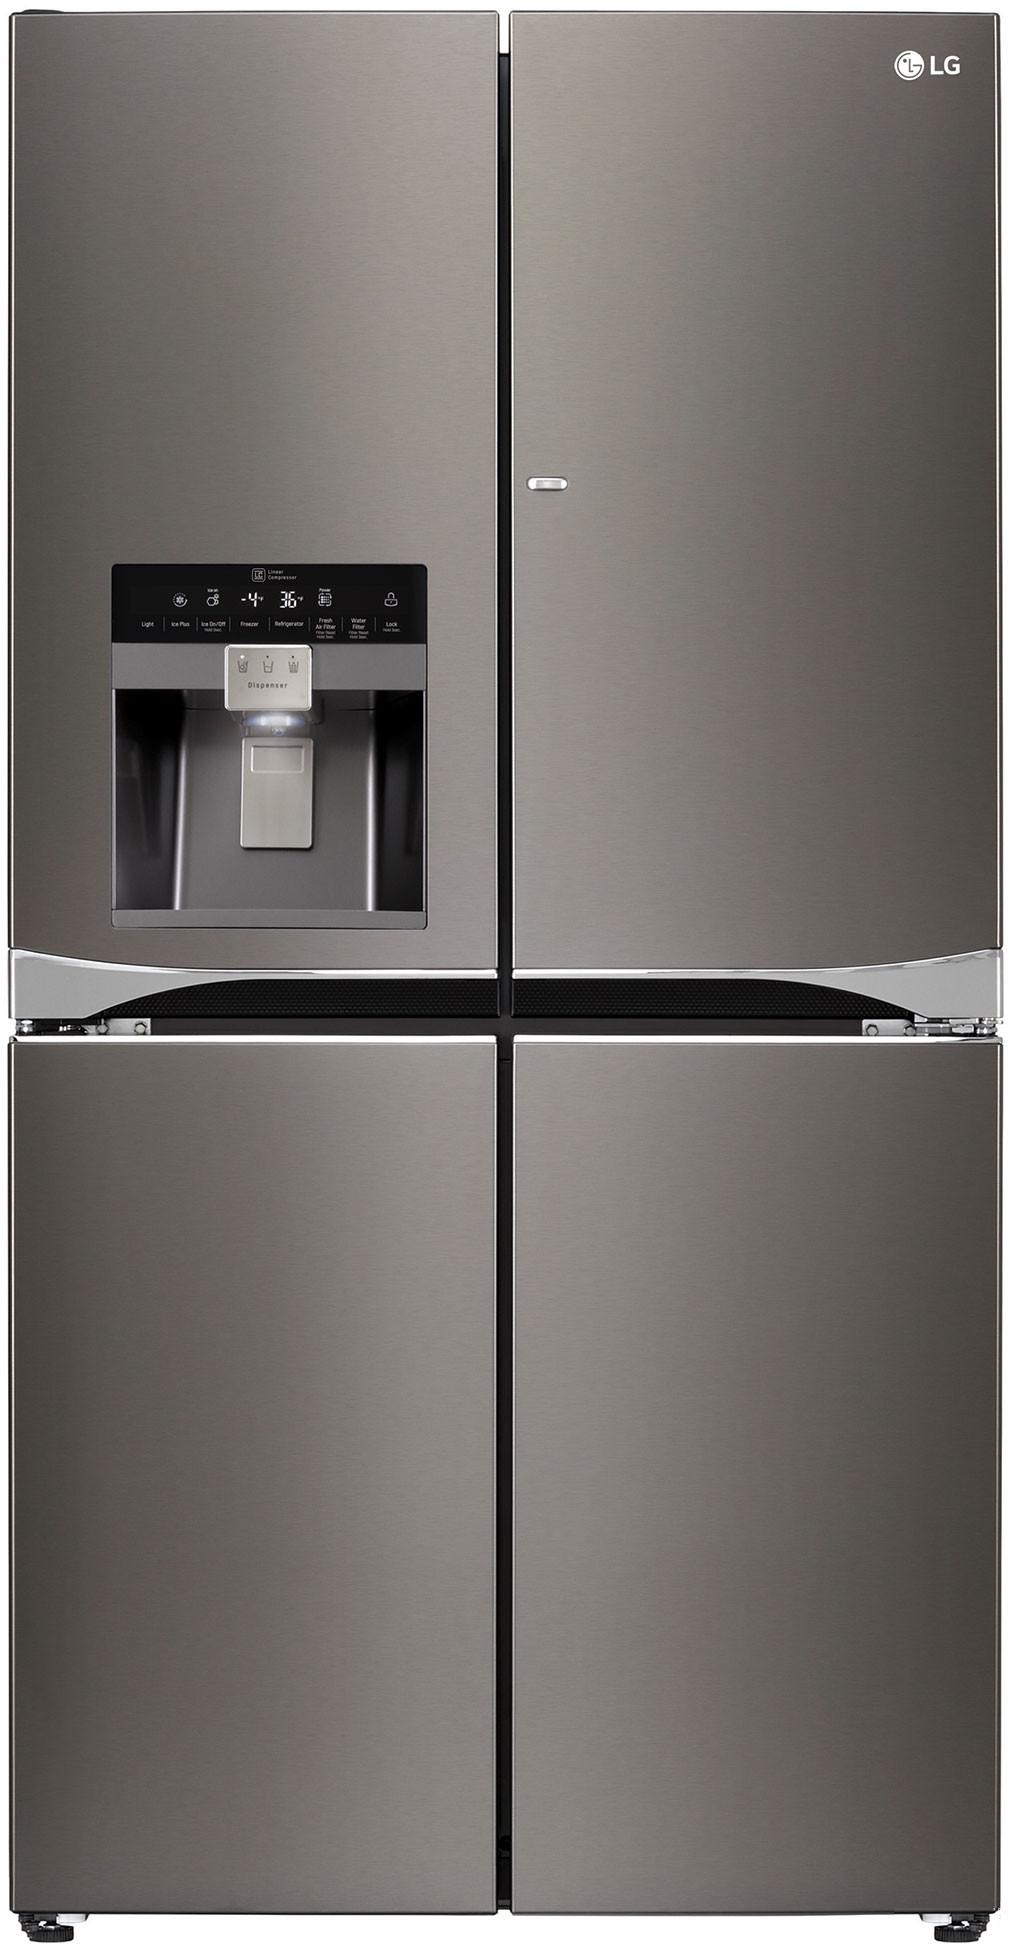 Lg LPXS30866S 30 cu. ft. Capacity 4 Door French Door Refrigerator with Ice & Water Dispenser